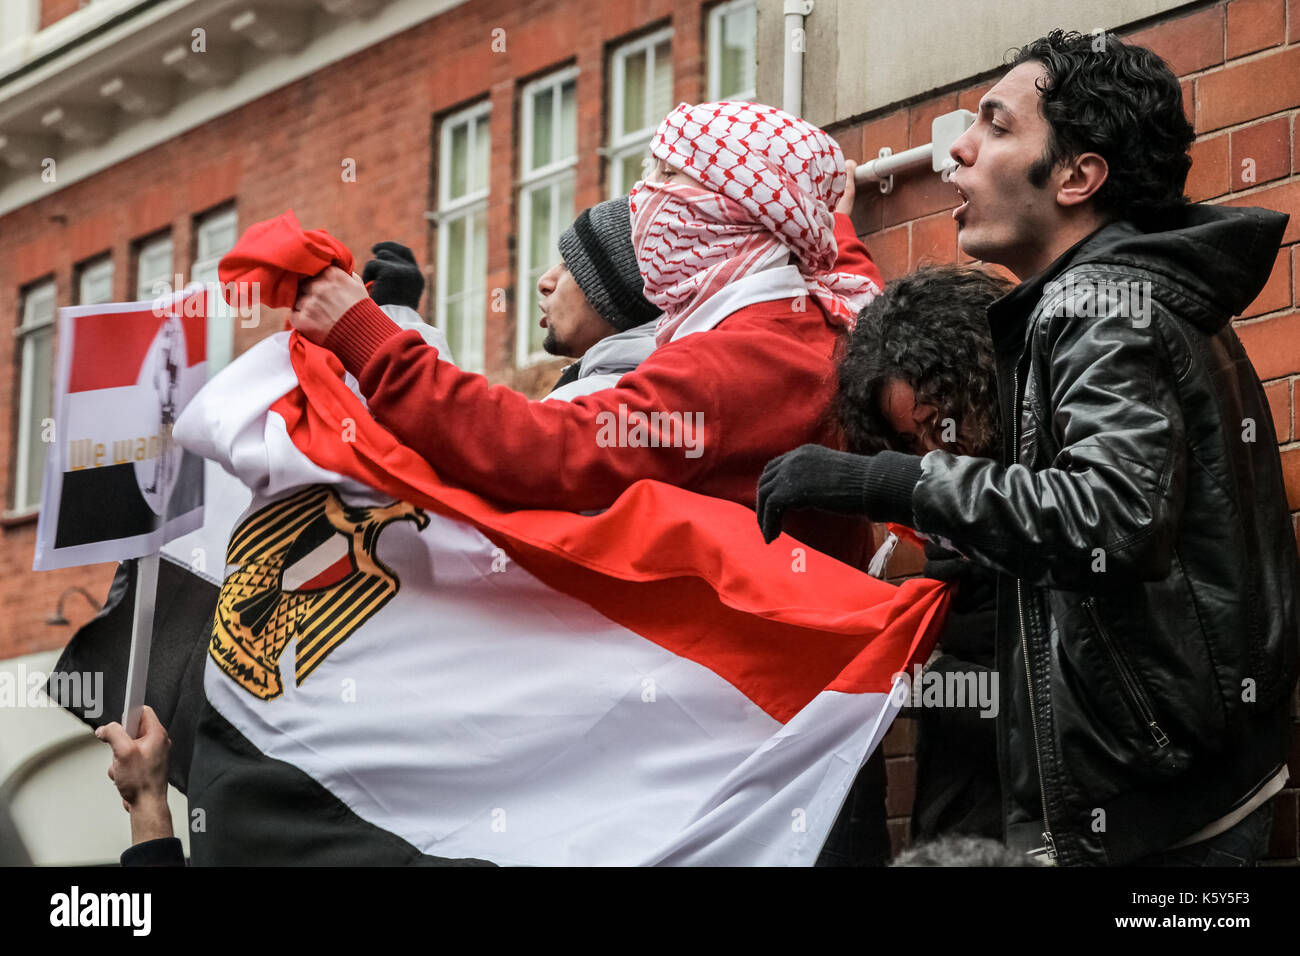 Des scènes de colère à l'extérieur de l'ambassade égyptienne à Londres que des centaines de manifestants se sont rassemblés à l'extérieur appelant le président Hosni Moubarak à démissionner. Banque D'Images